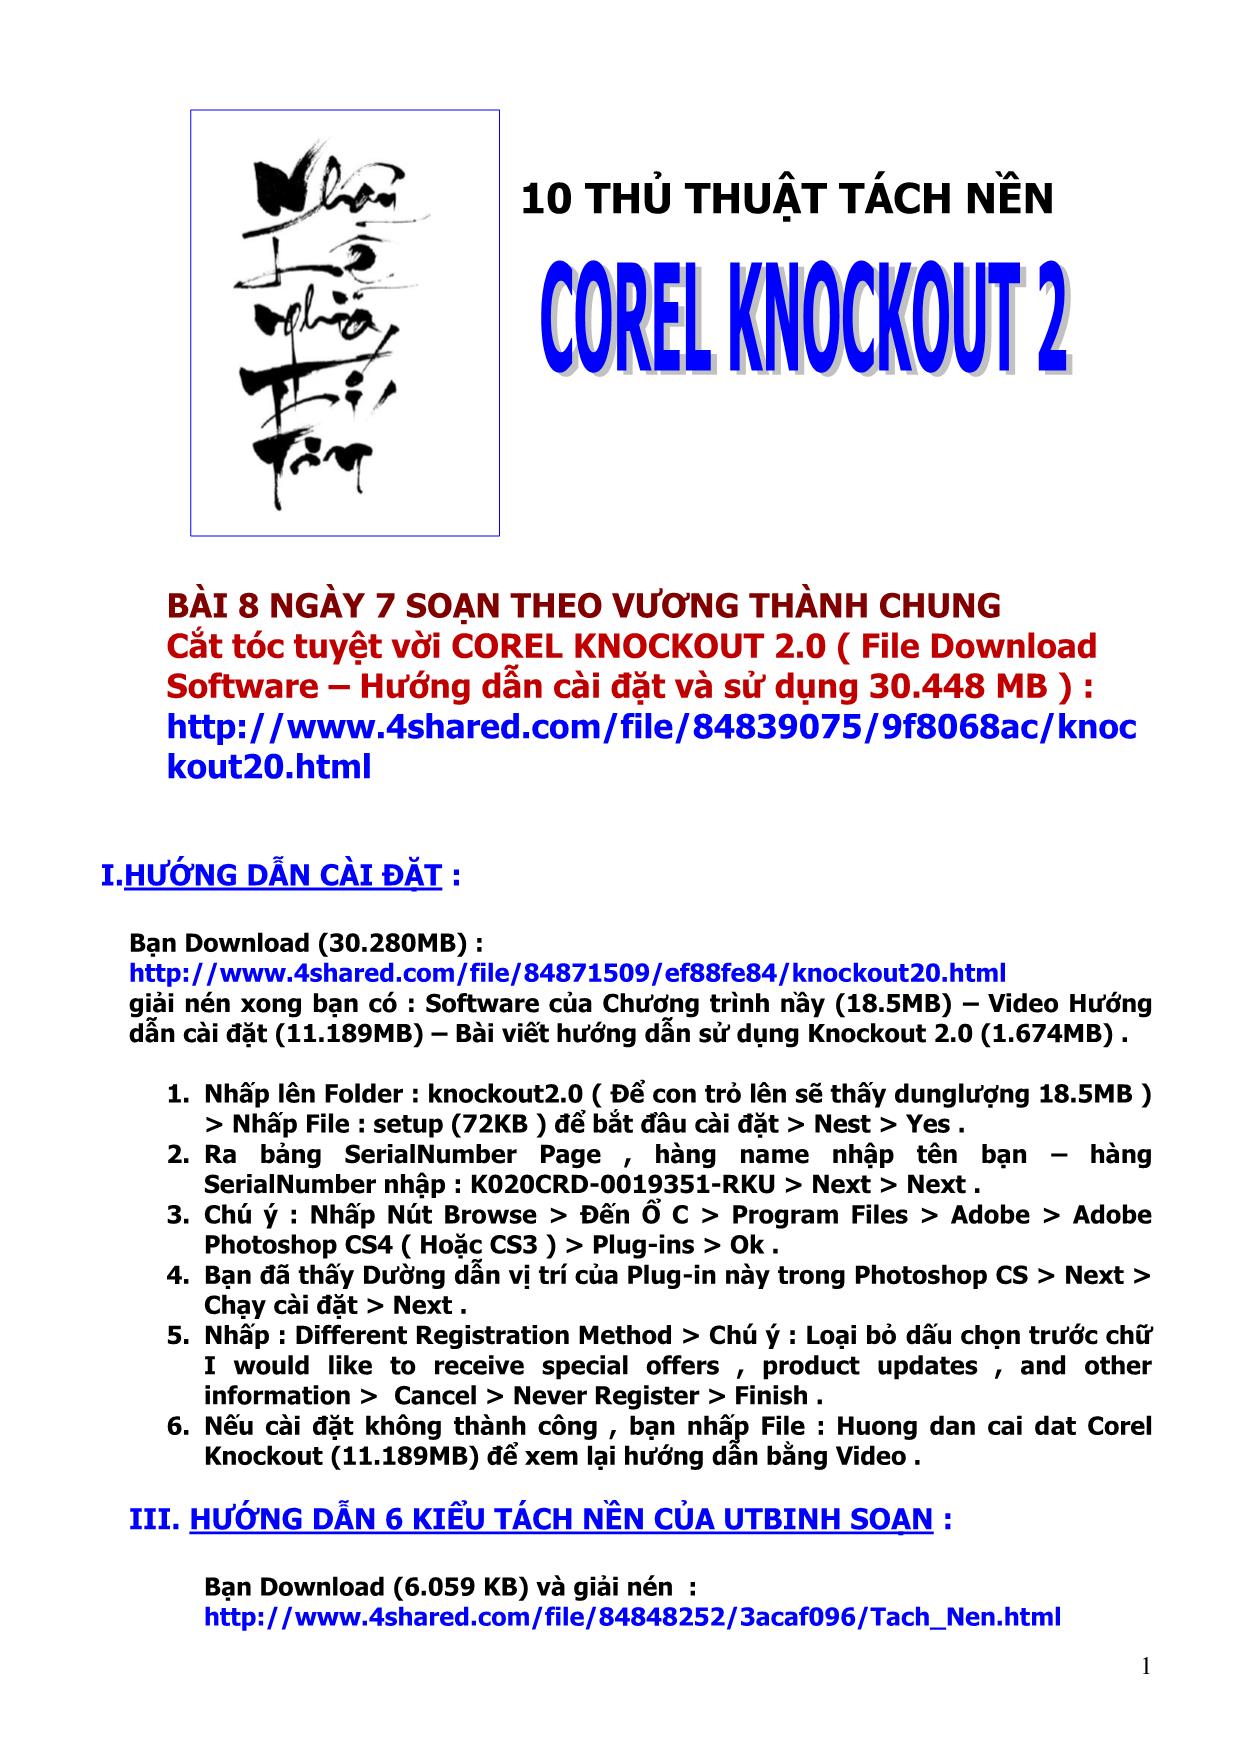 10 thủ thuật tách nền Corel Knockout 2 trang 1